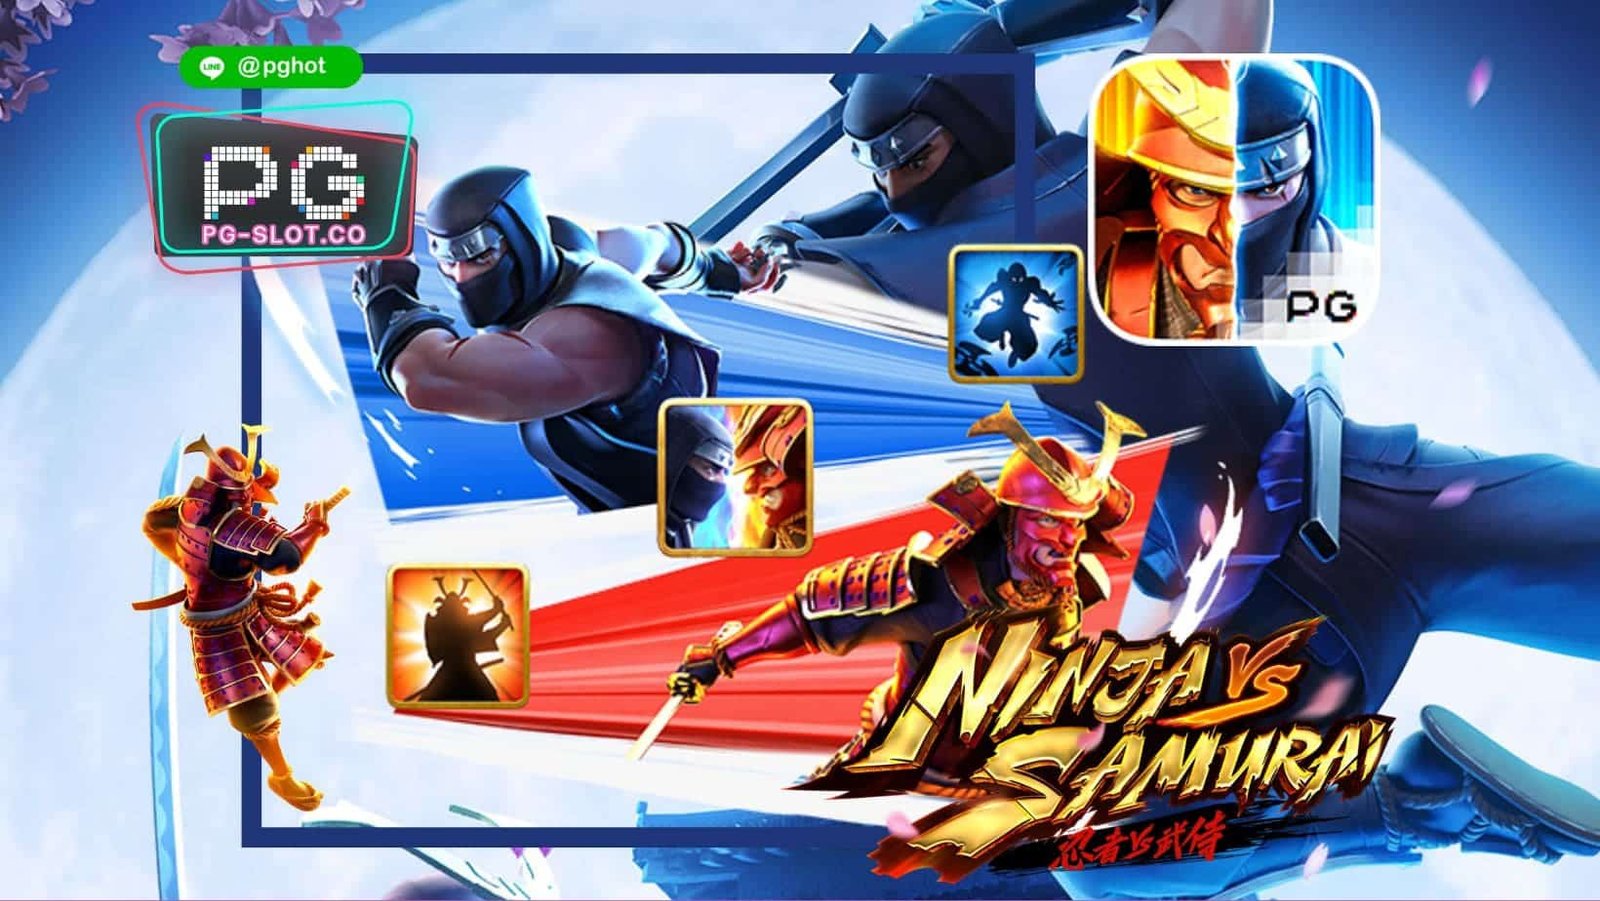 ทดลองเล่นสล็อต Ninja VS Samurai